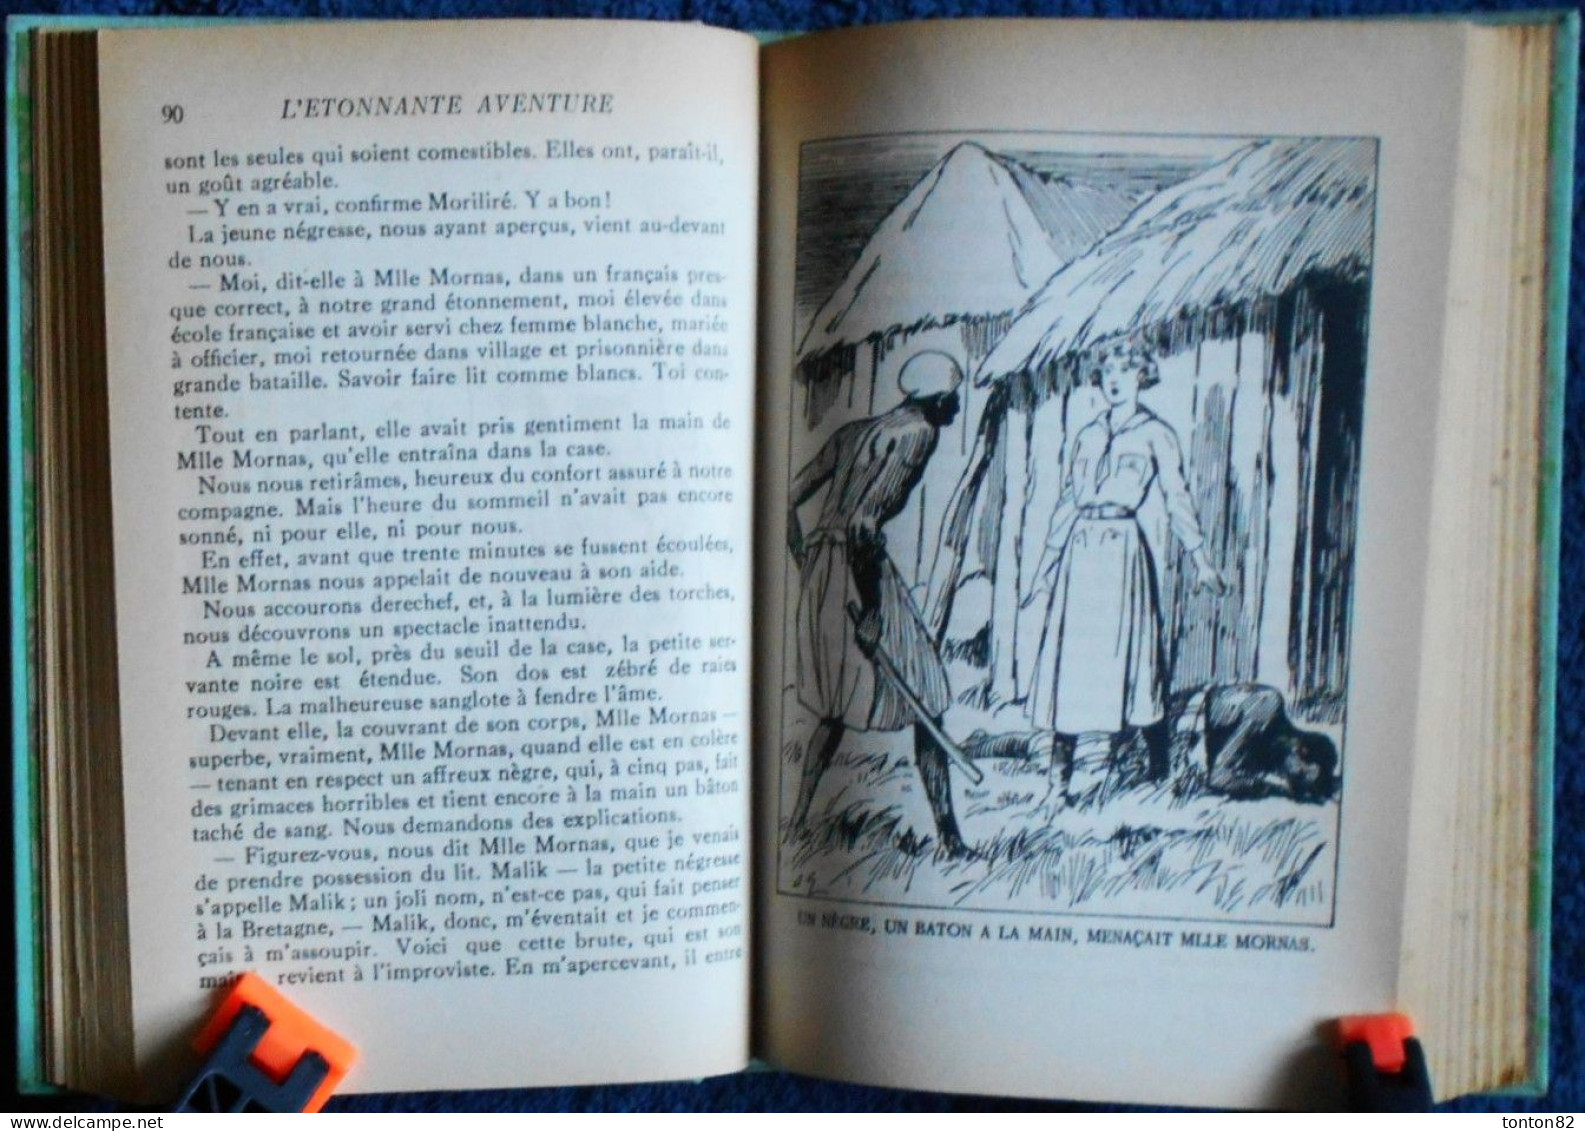 Jules Verne - L'étrange Aventure de la Mission BARSAC - ( Tomes 1 & 2 ) - HACHETTE / Bibliothèque Verte - ( 1941 ) .